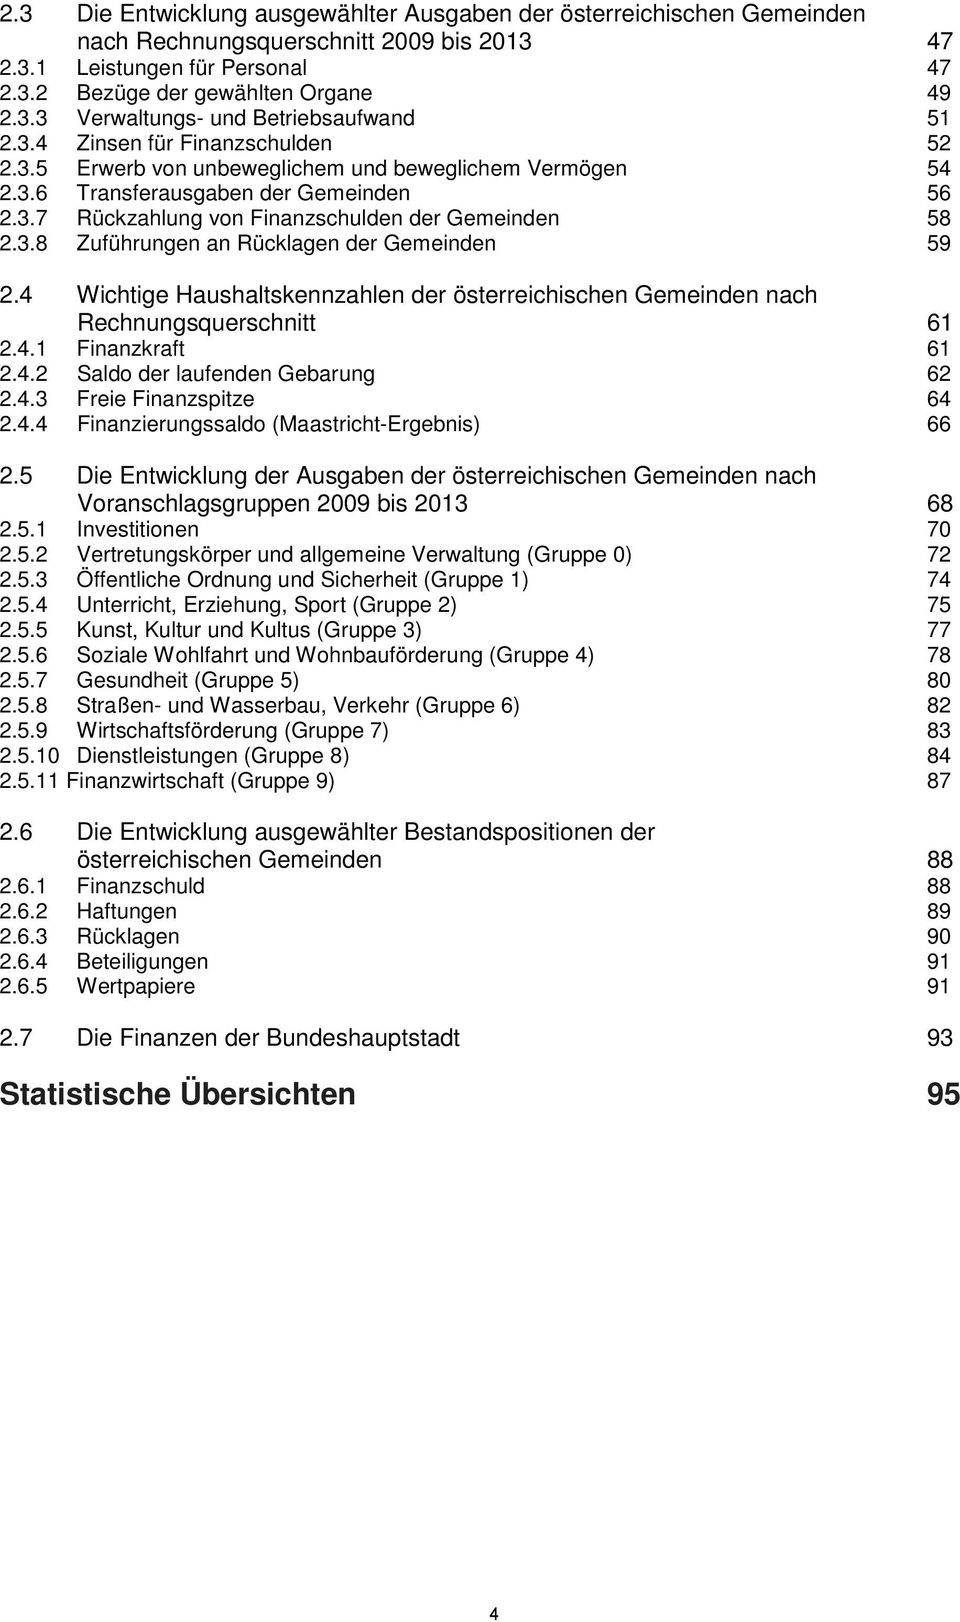 4 Wichtige Haushaltskennzahlen der österreichischen Gemeinden nach Rechnungsquerschnitt 61 2.4.1 Finanzkraft 61 2.4.2 Saldo der laufenden Gebarung 62 2.4.3 Freie Finanzspitze 64 2.4.4 Finanzierungssaldo (Maastricht-Ergebnis) 66 2.